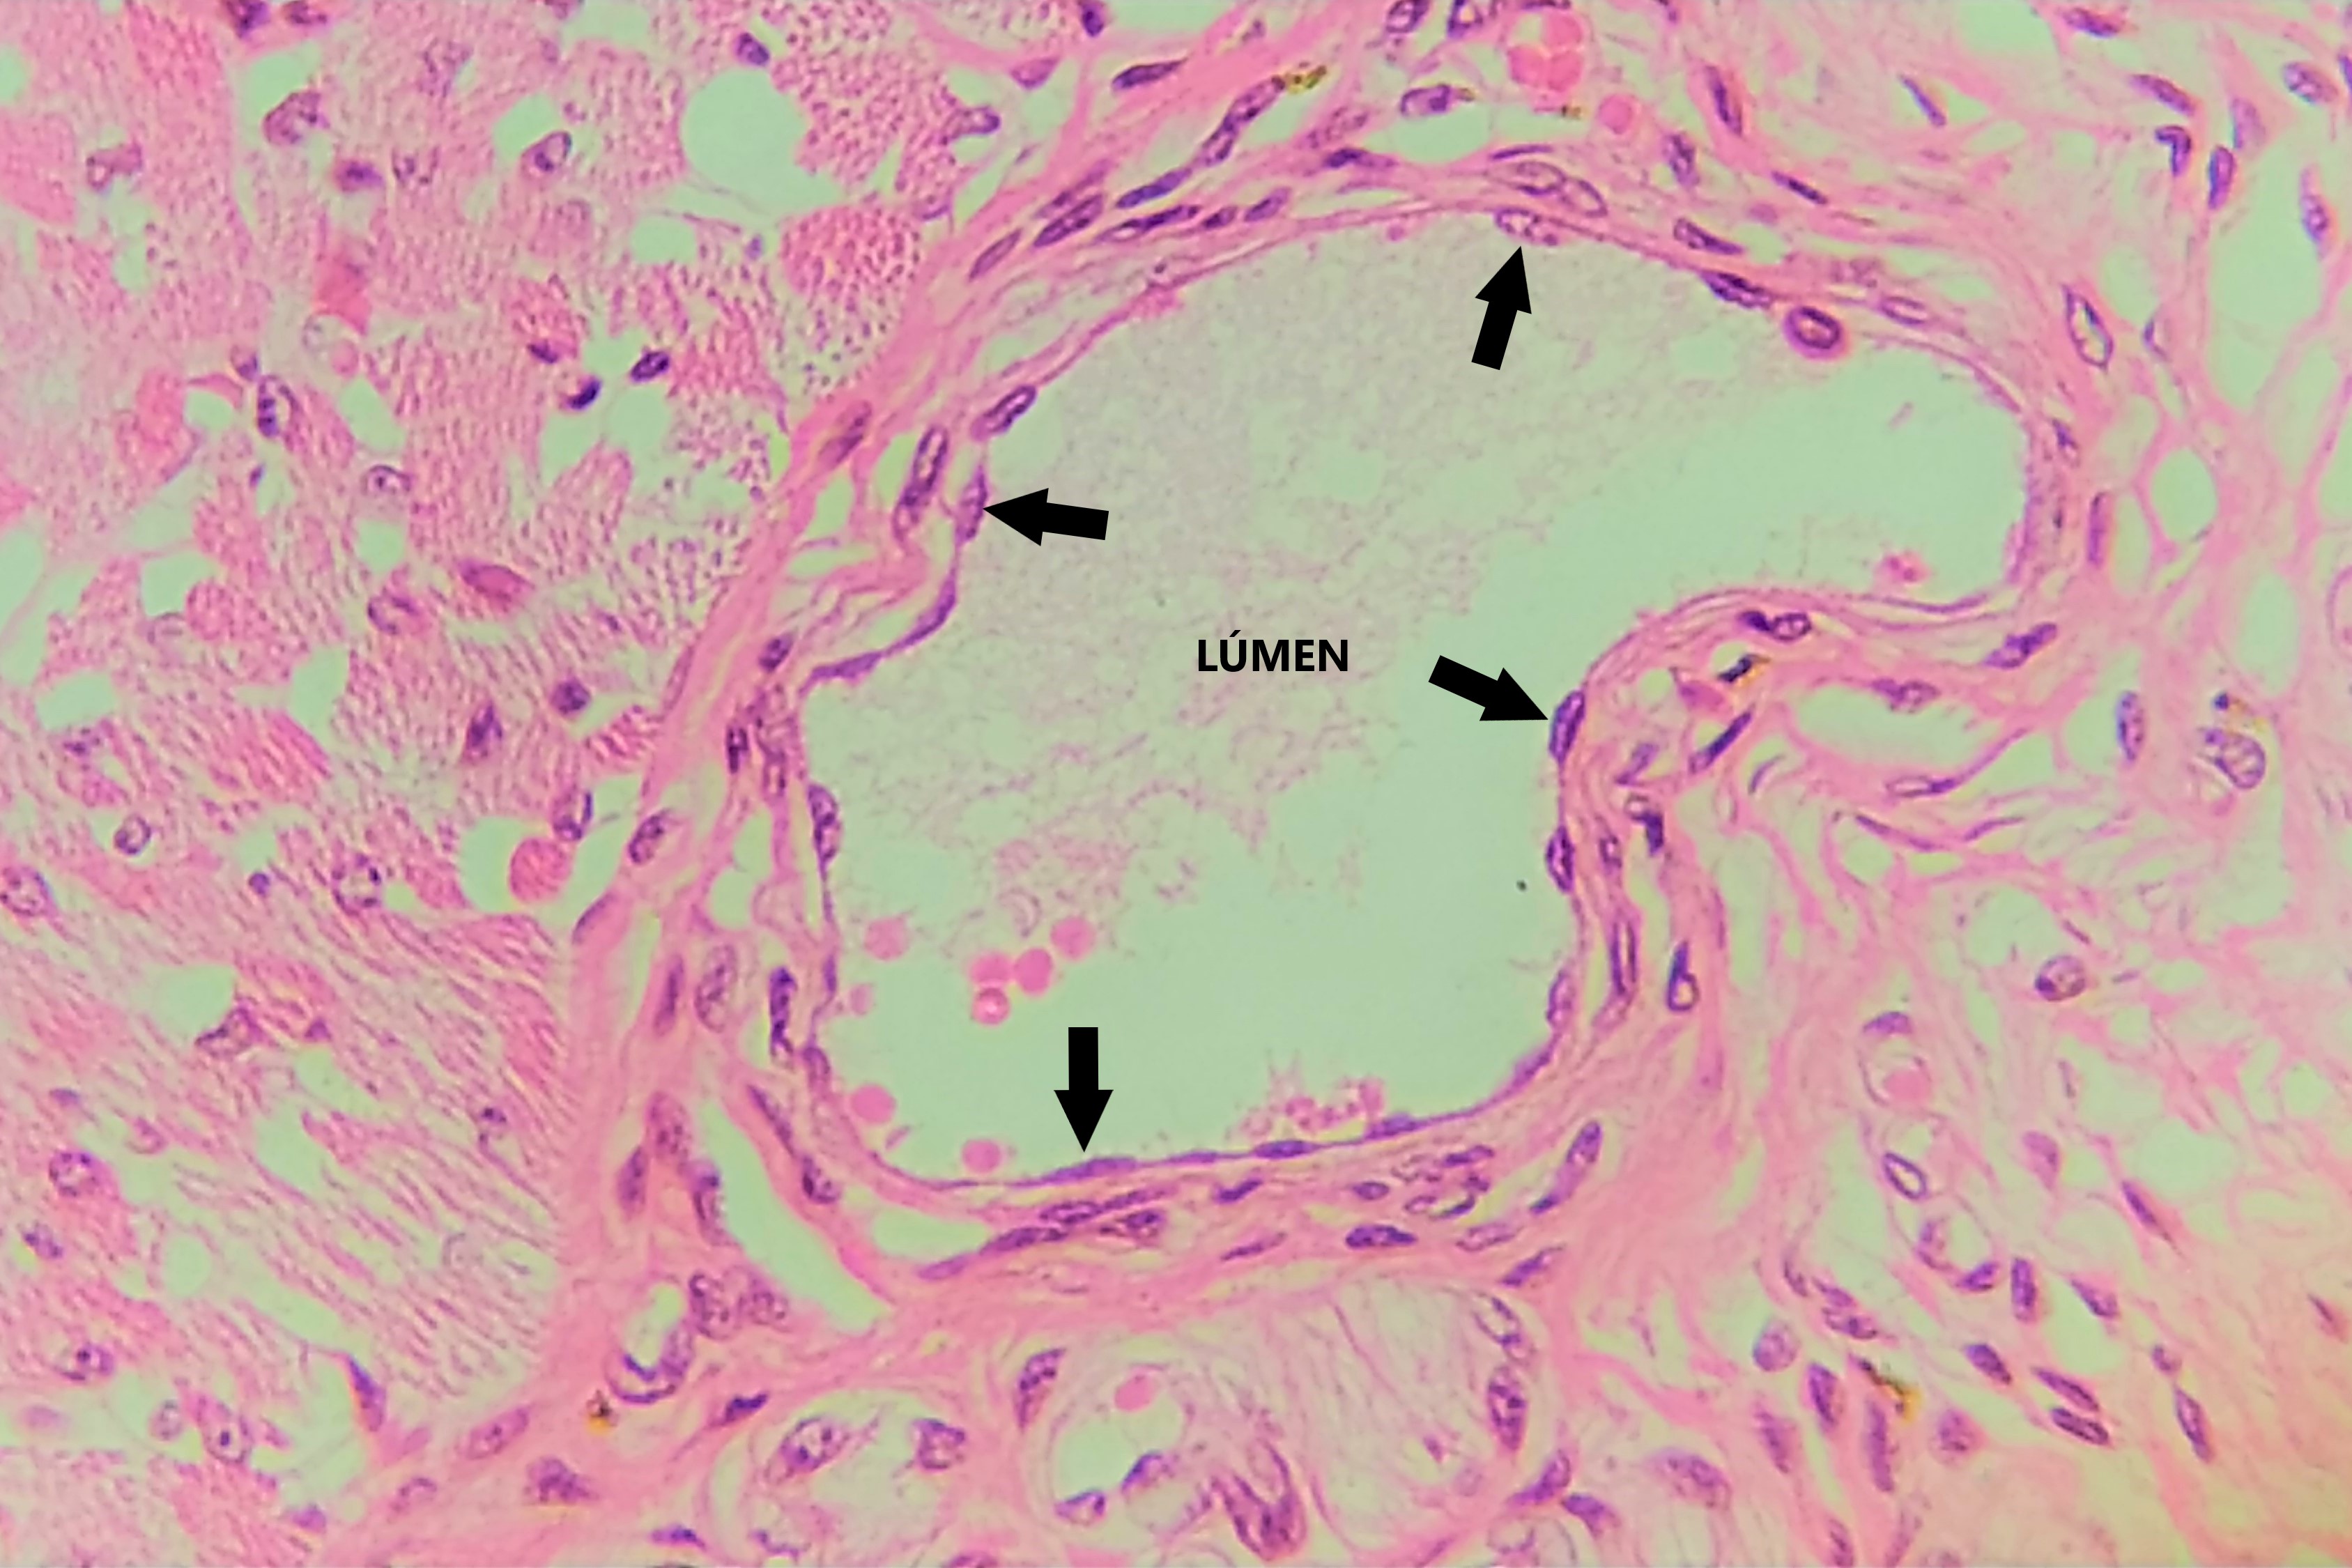 Lâmina: Pele - vaso sanguíneo (H&E - Aumento: 400x). A fotomicrografia mostra um vaso sanguíneo cortado transversalmente, revestido internamente por epitélio simples pavimentoso, conhecido como endotélio.  As setas apontam para os núcleos das células pavimentosas, que fazem saliência no lúmen ou luz do vaso.   É possível observar uma fileira única de células, identificadas por seus núcleos achatados (acompanhando o formato das células).